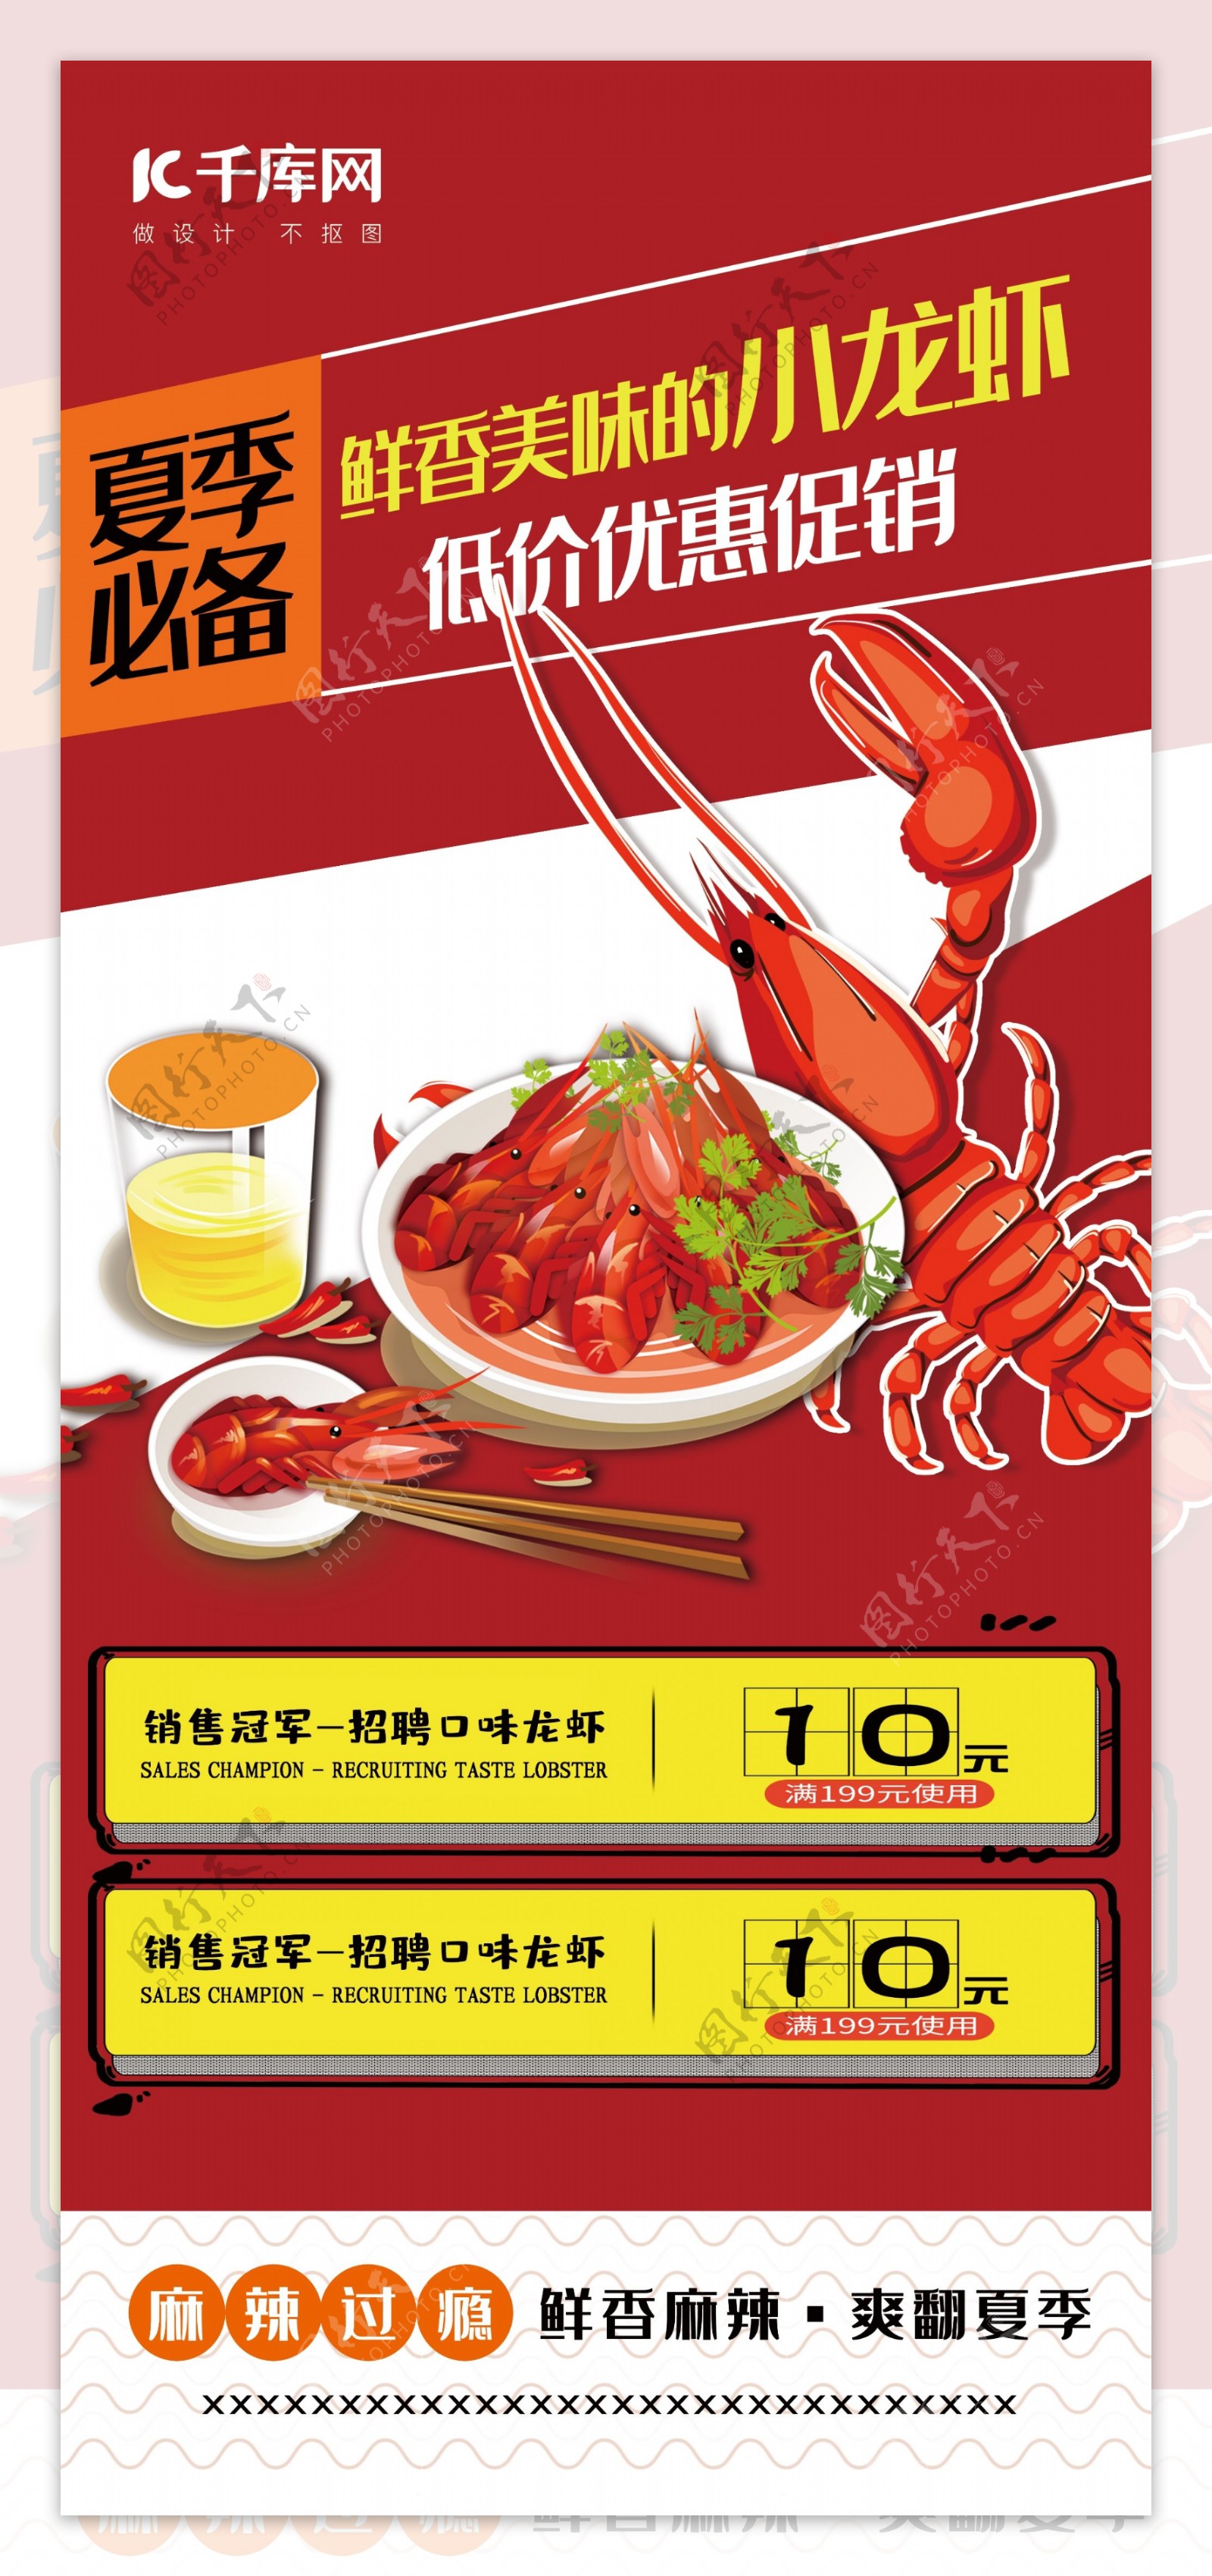 美食红色简约手绘风夏季必备美味小龙虾展架